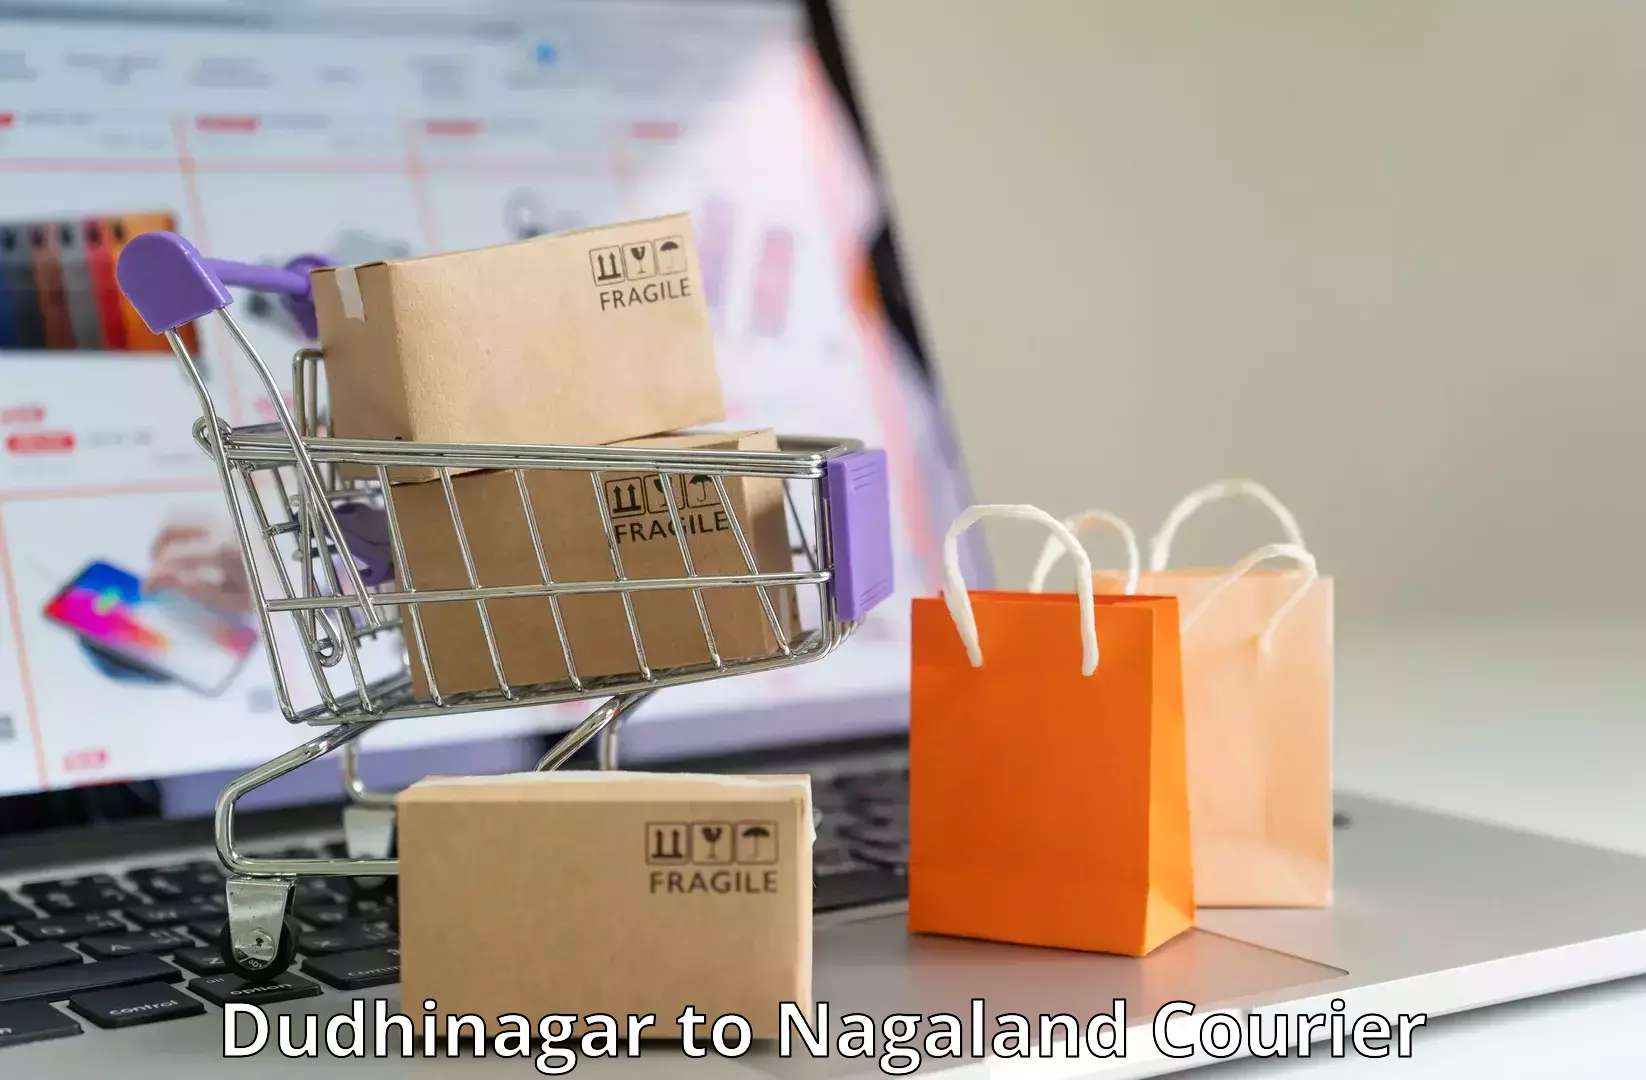 Enhanced shipping experience Dudhinagar to NIT Nagaland